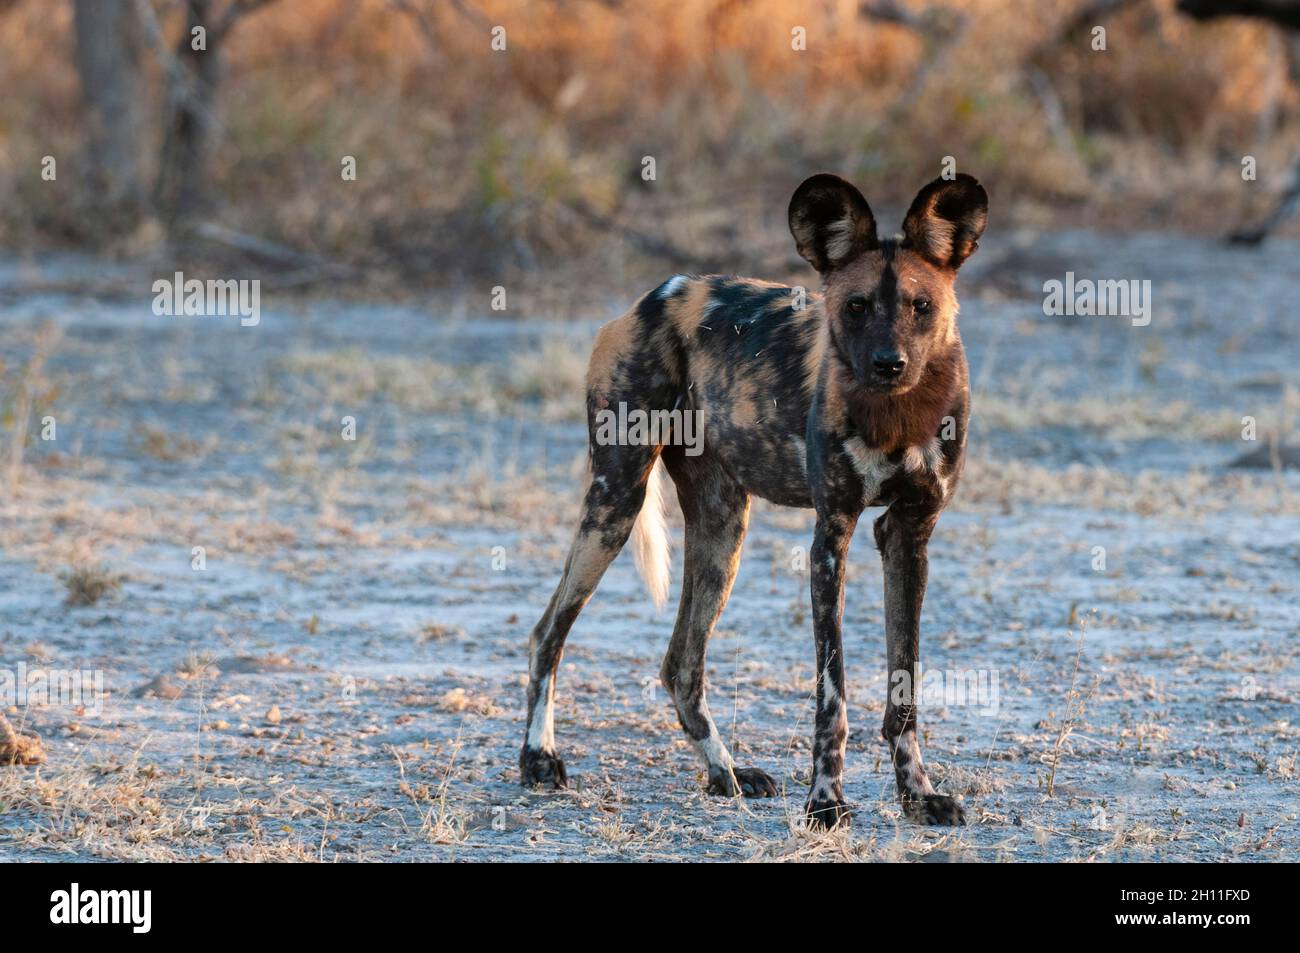 Ritratto di un cane africano in pericolo di caccia al mantello, o lupo dipinto, Lycaon pictus. Parco Nazionale di Nxai Pan, Botswana. Foto Stock